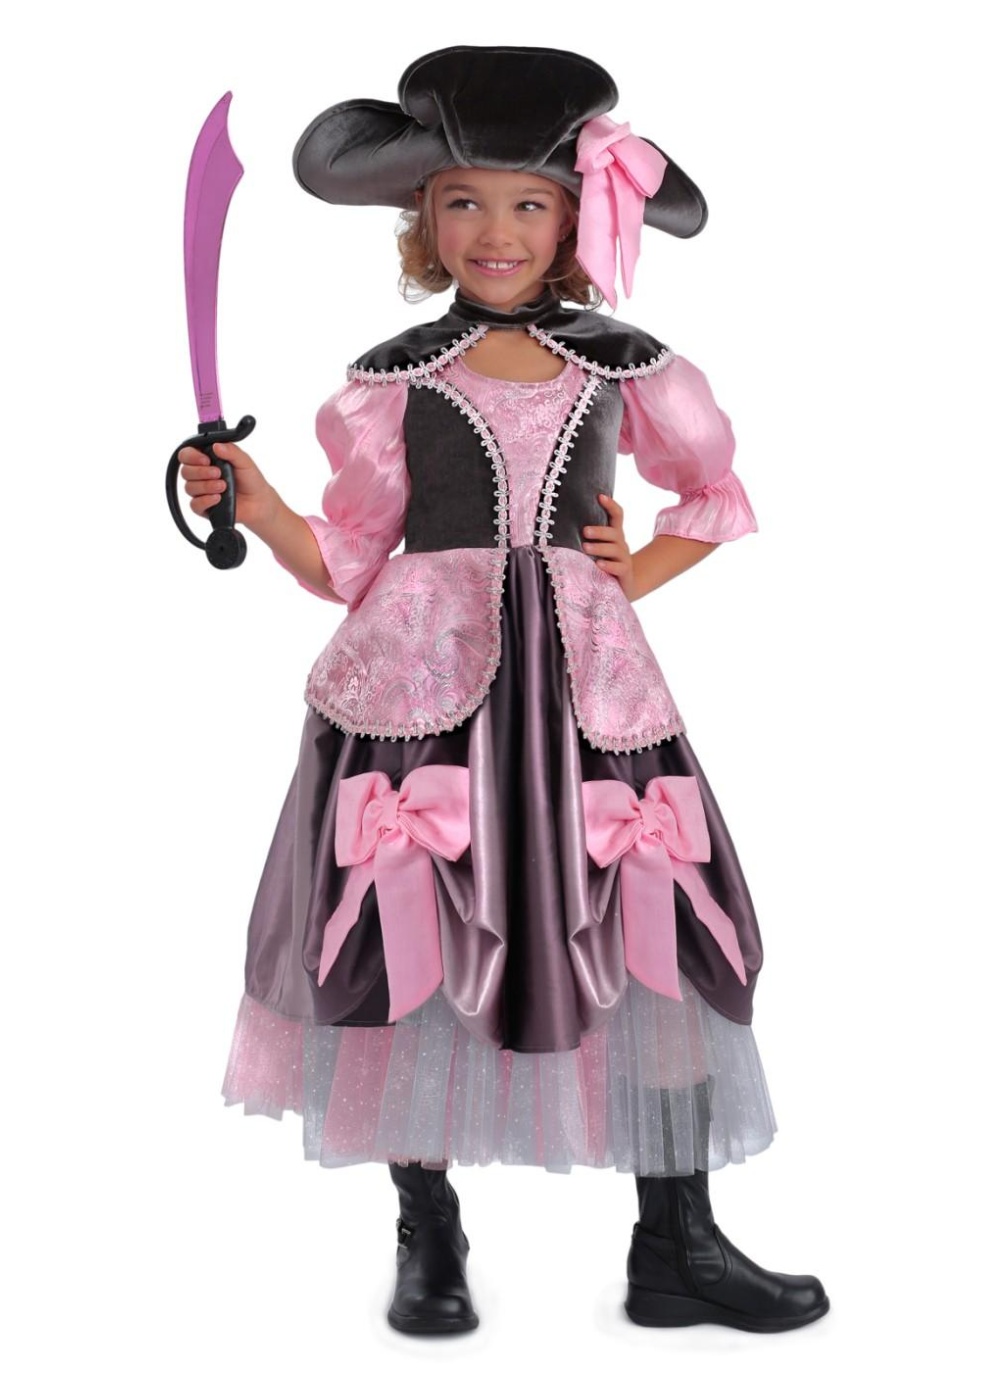  Girls Vivian Pirate Costume